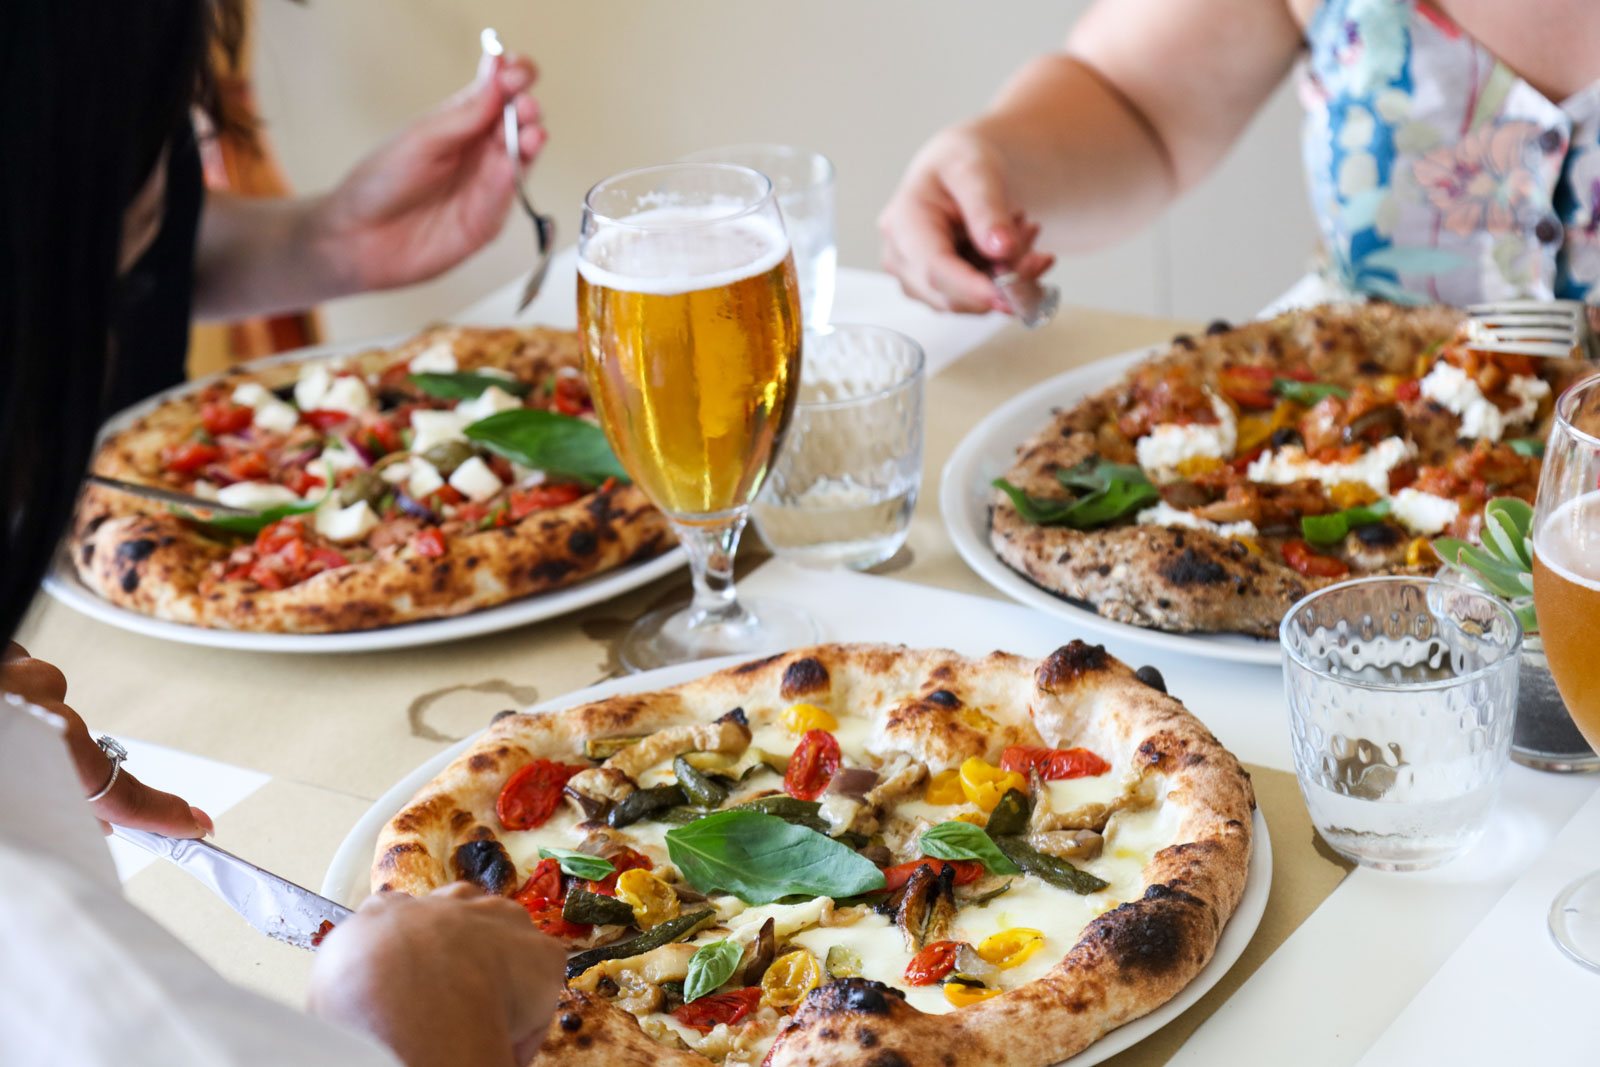 Migliori Pizzerie a Taormina, Pizzerie a Taormina, Pizzeria Vecchia Taormina, Pizze, Birra